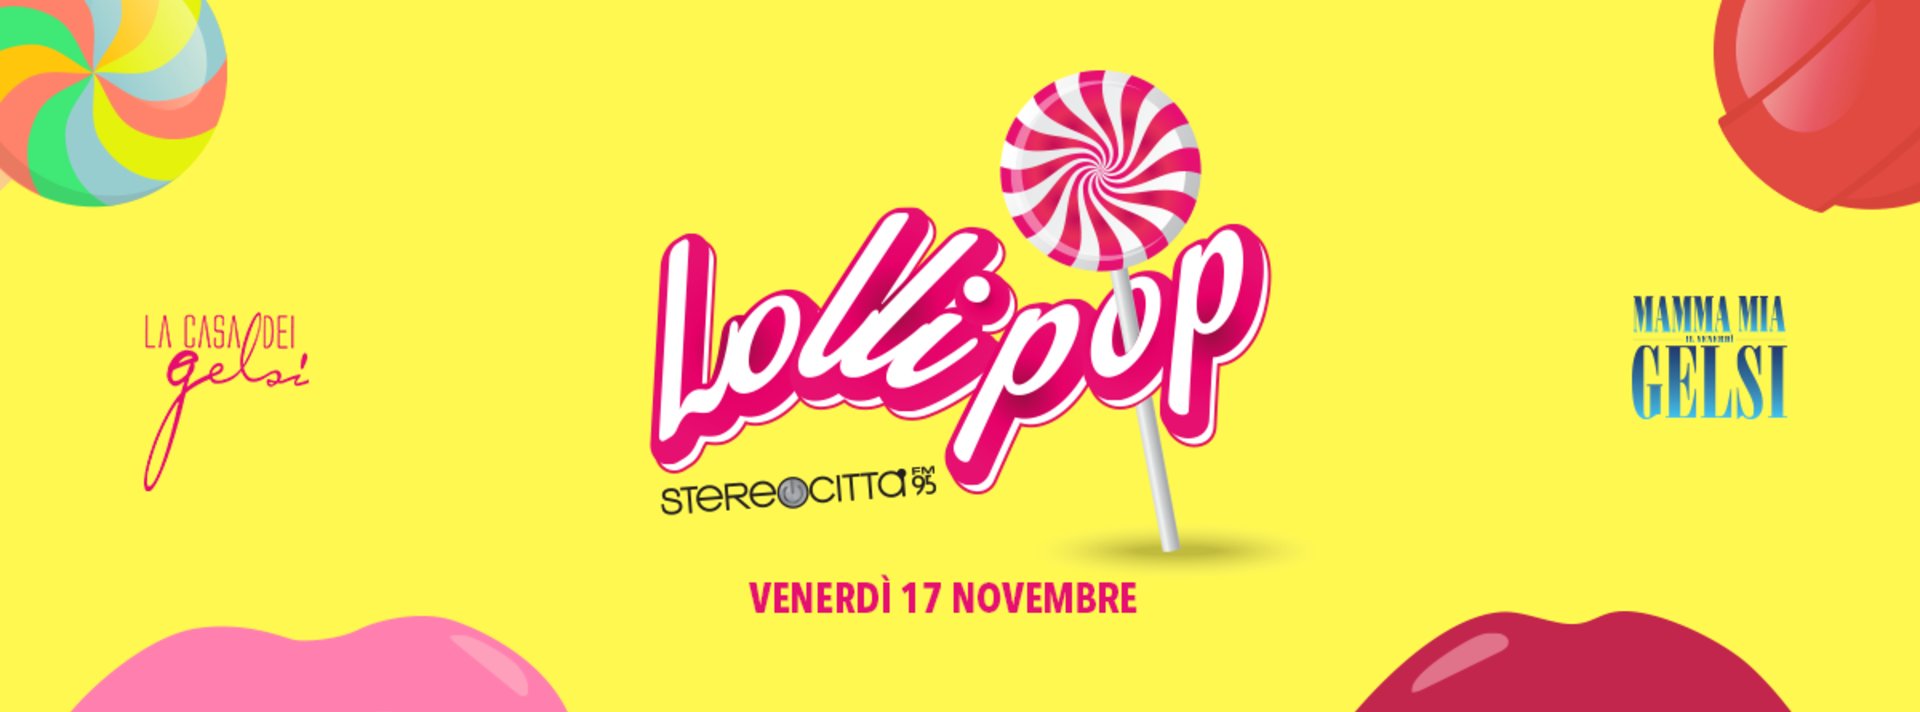 Lollipop ai Gelsi in collaborazione con Stereocitt